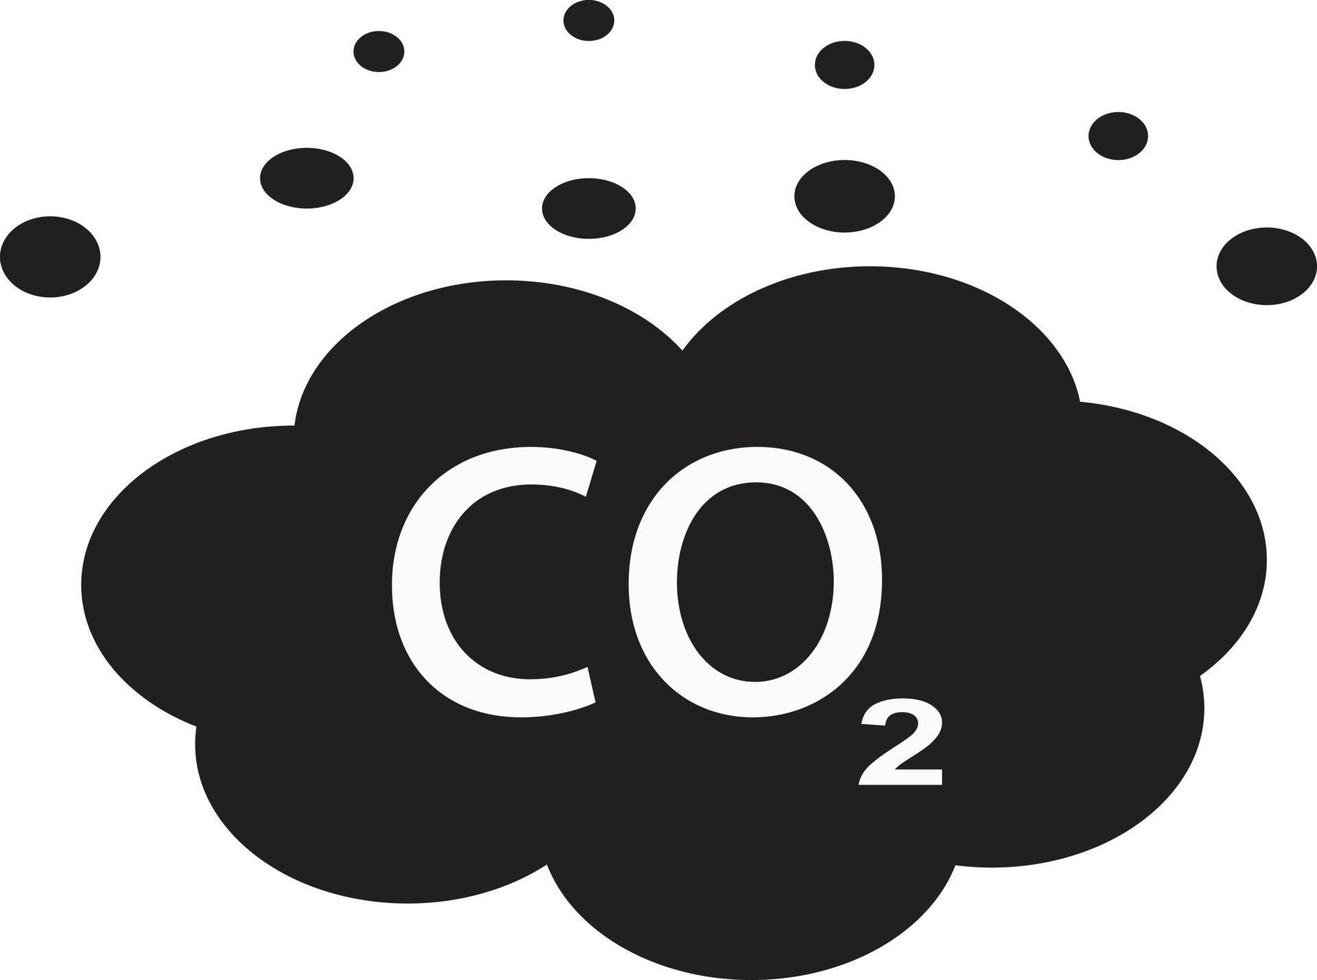 icona di co2. anidride carbonica S. simbolo delle emissioni di co2. segno di riduzione delle emissioni di carbonio. vettore